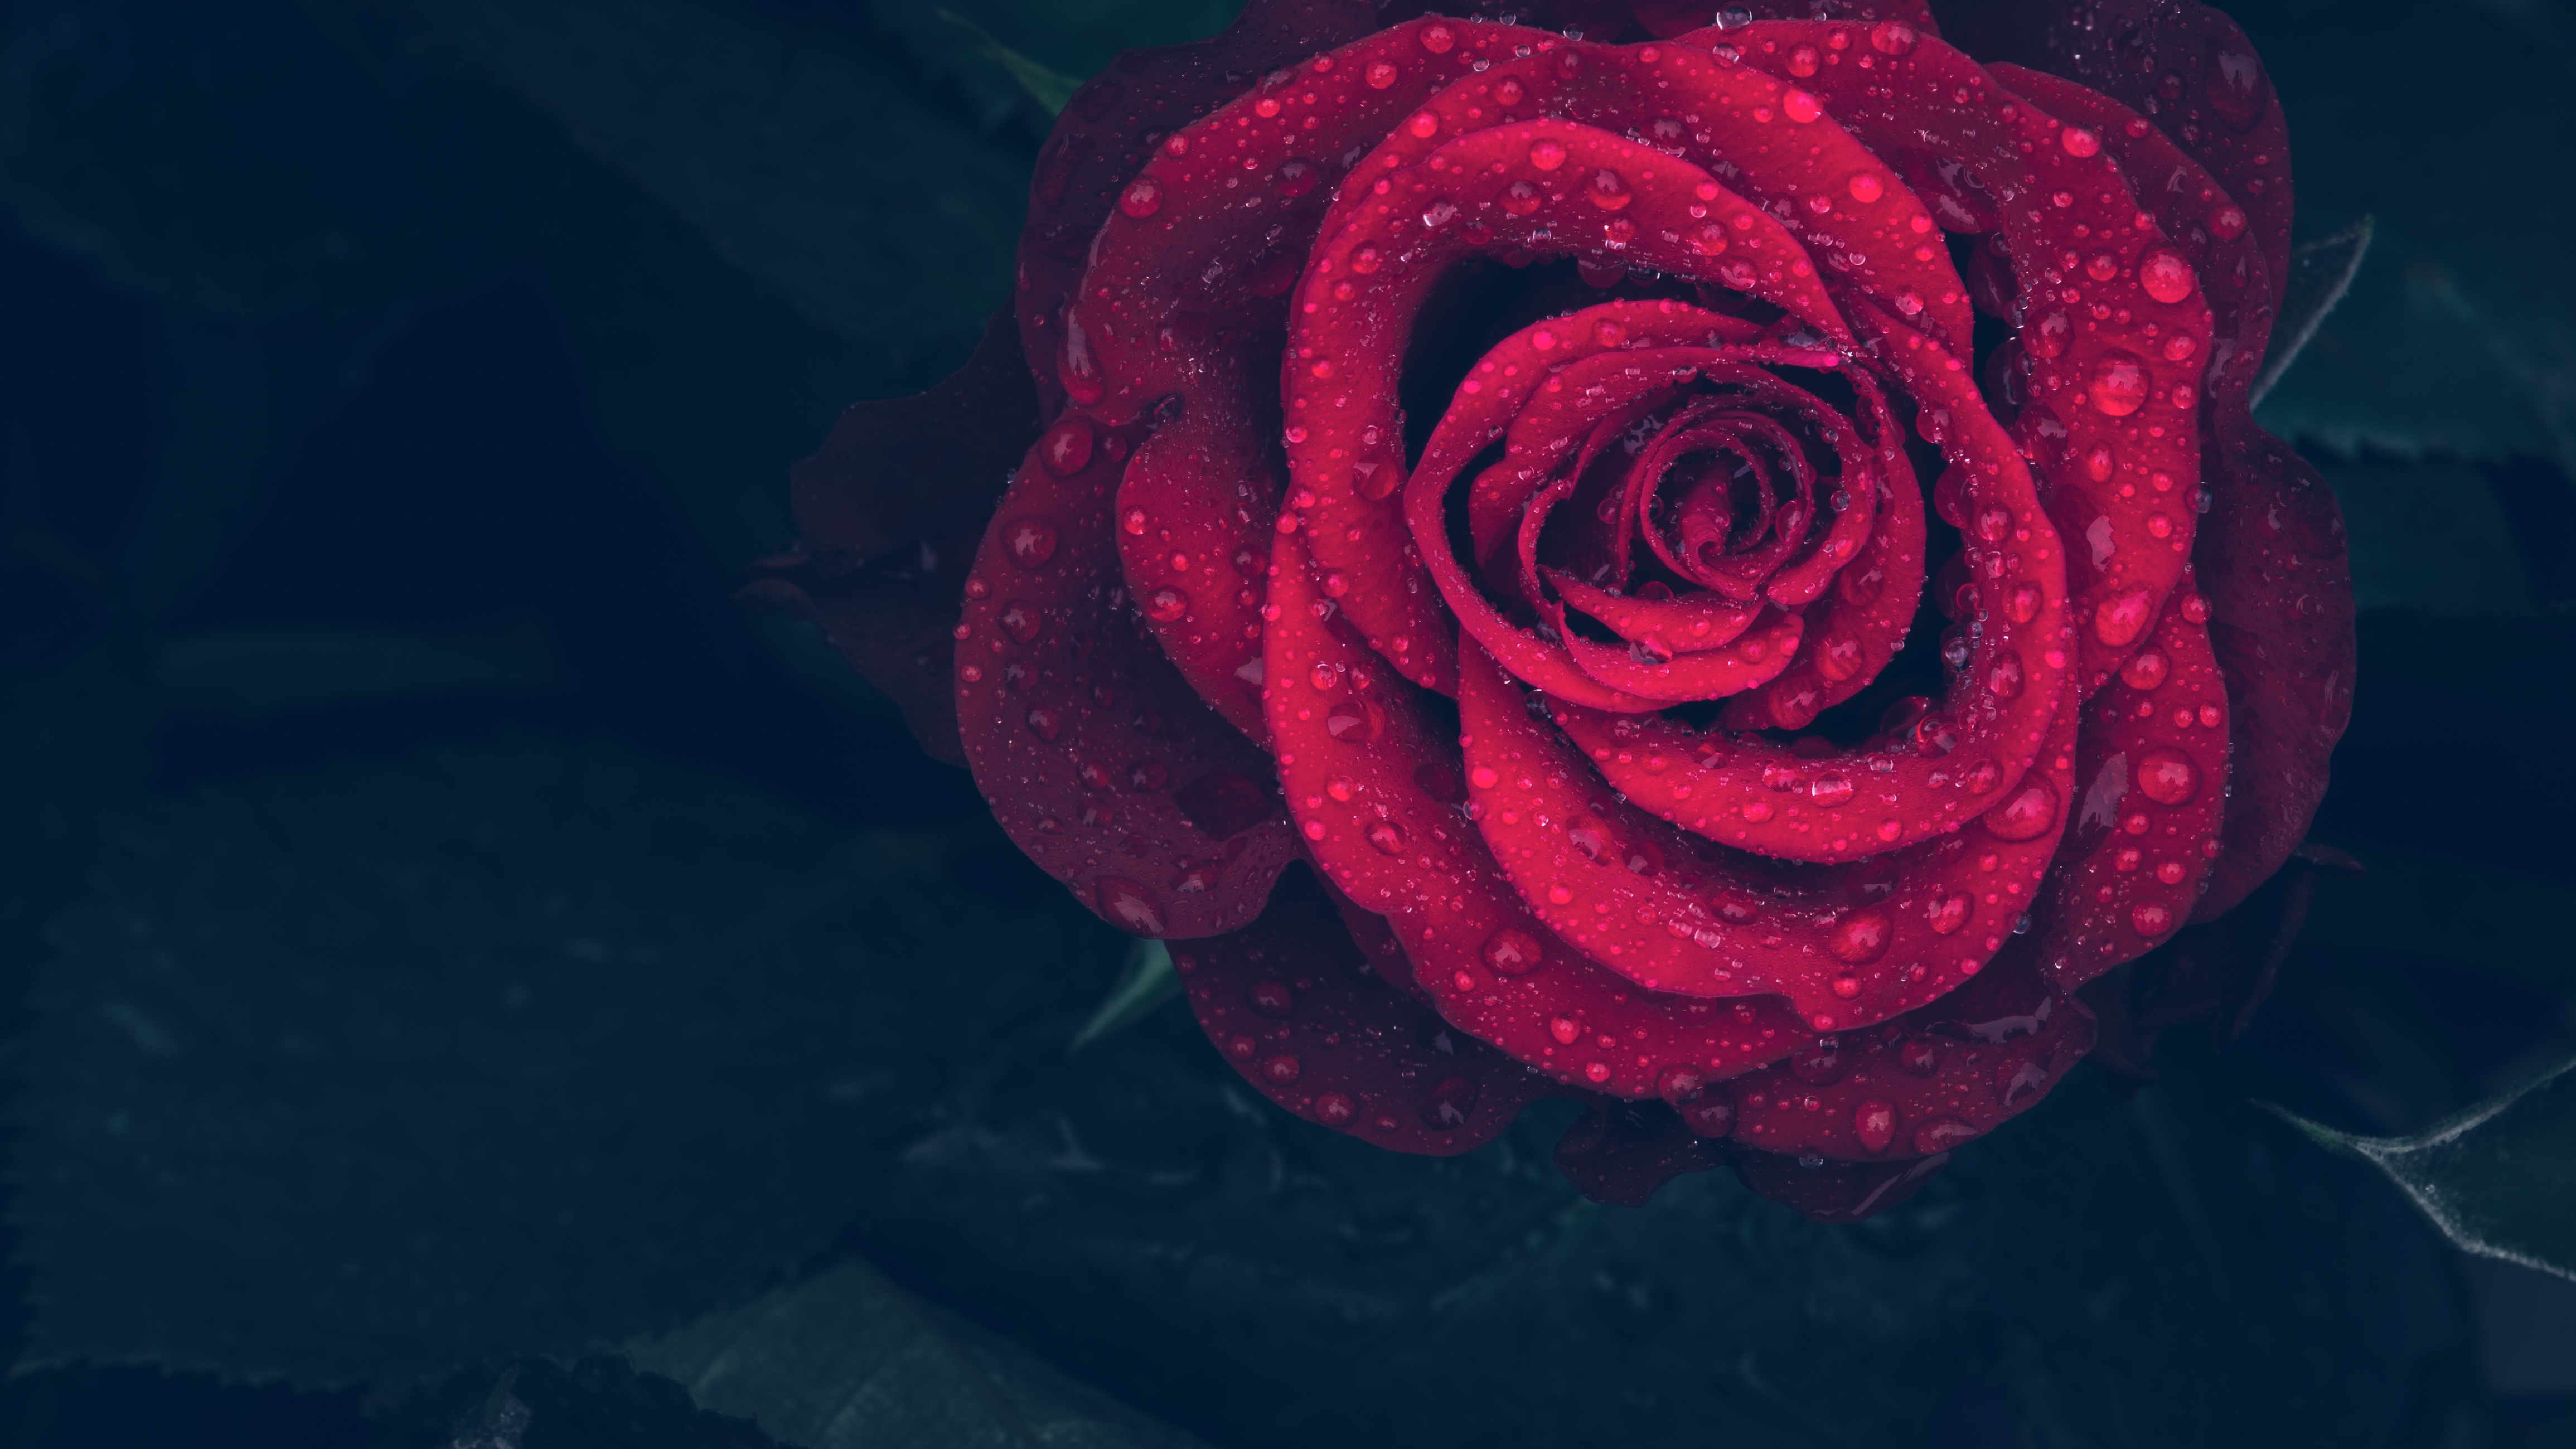 Бесплатное фото Красная роза с каплями дождя на лепестках